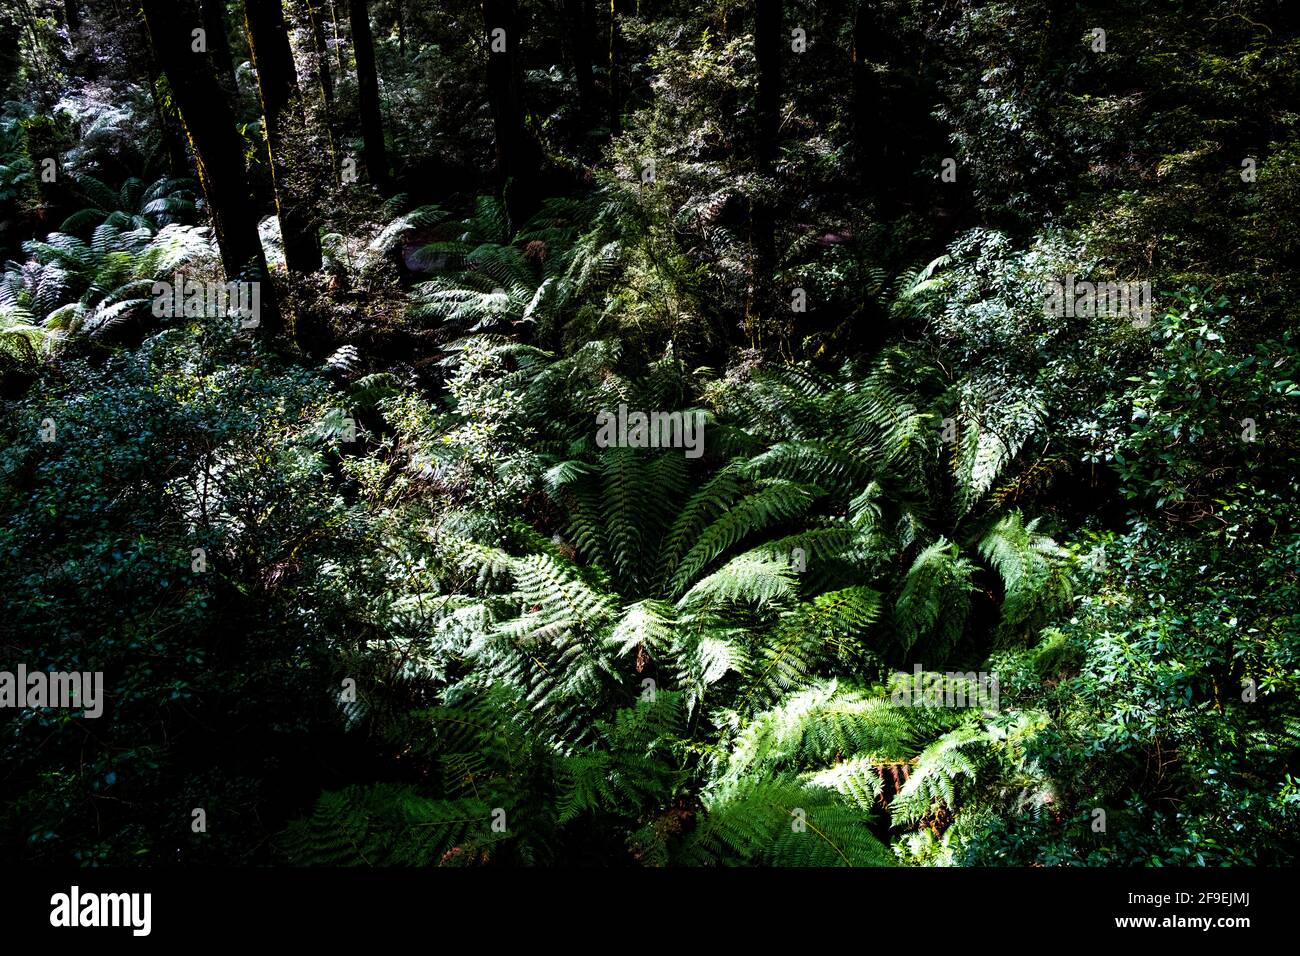 Jeu de lumière et d'ombre dans le feuillage de la forêt tropicale tempérée australienne Banque D'Images